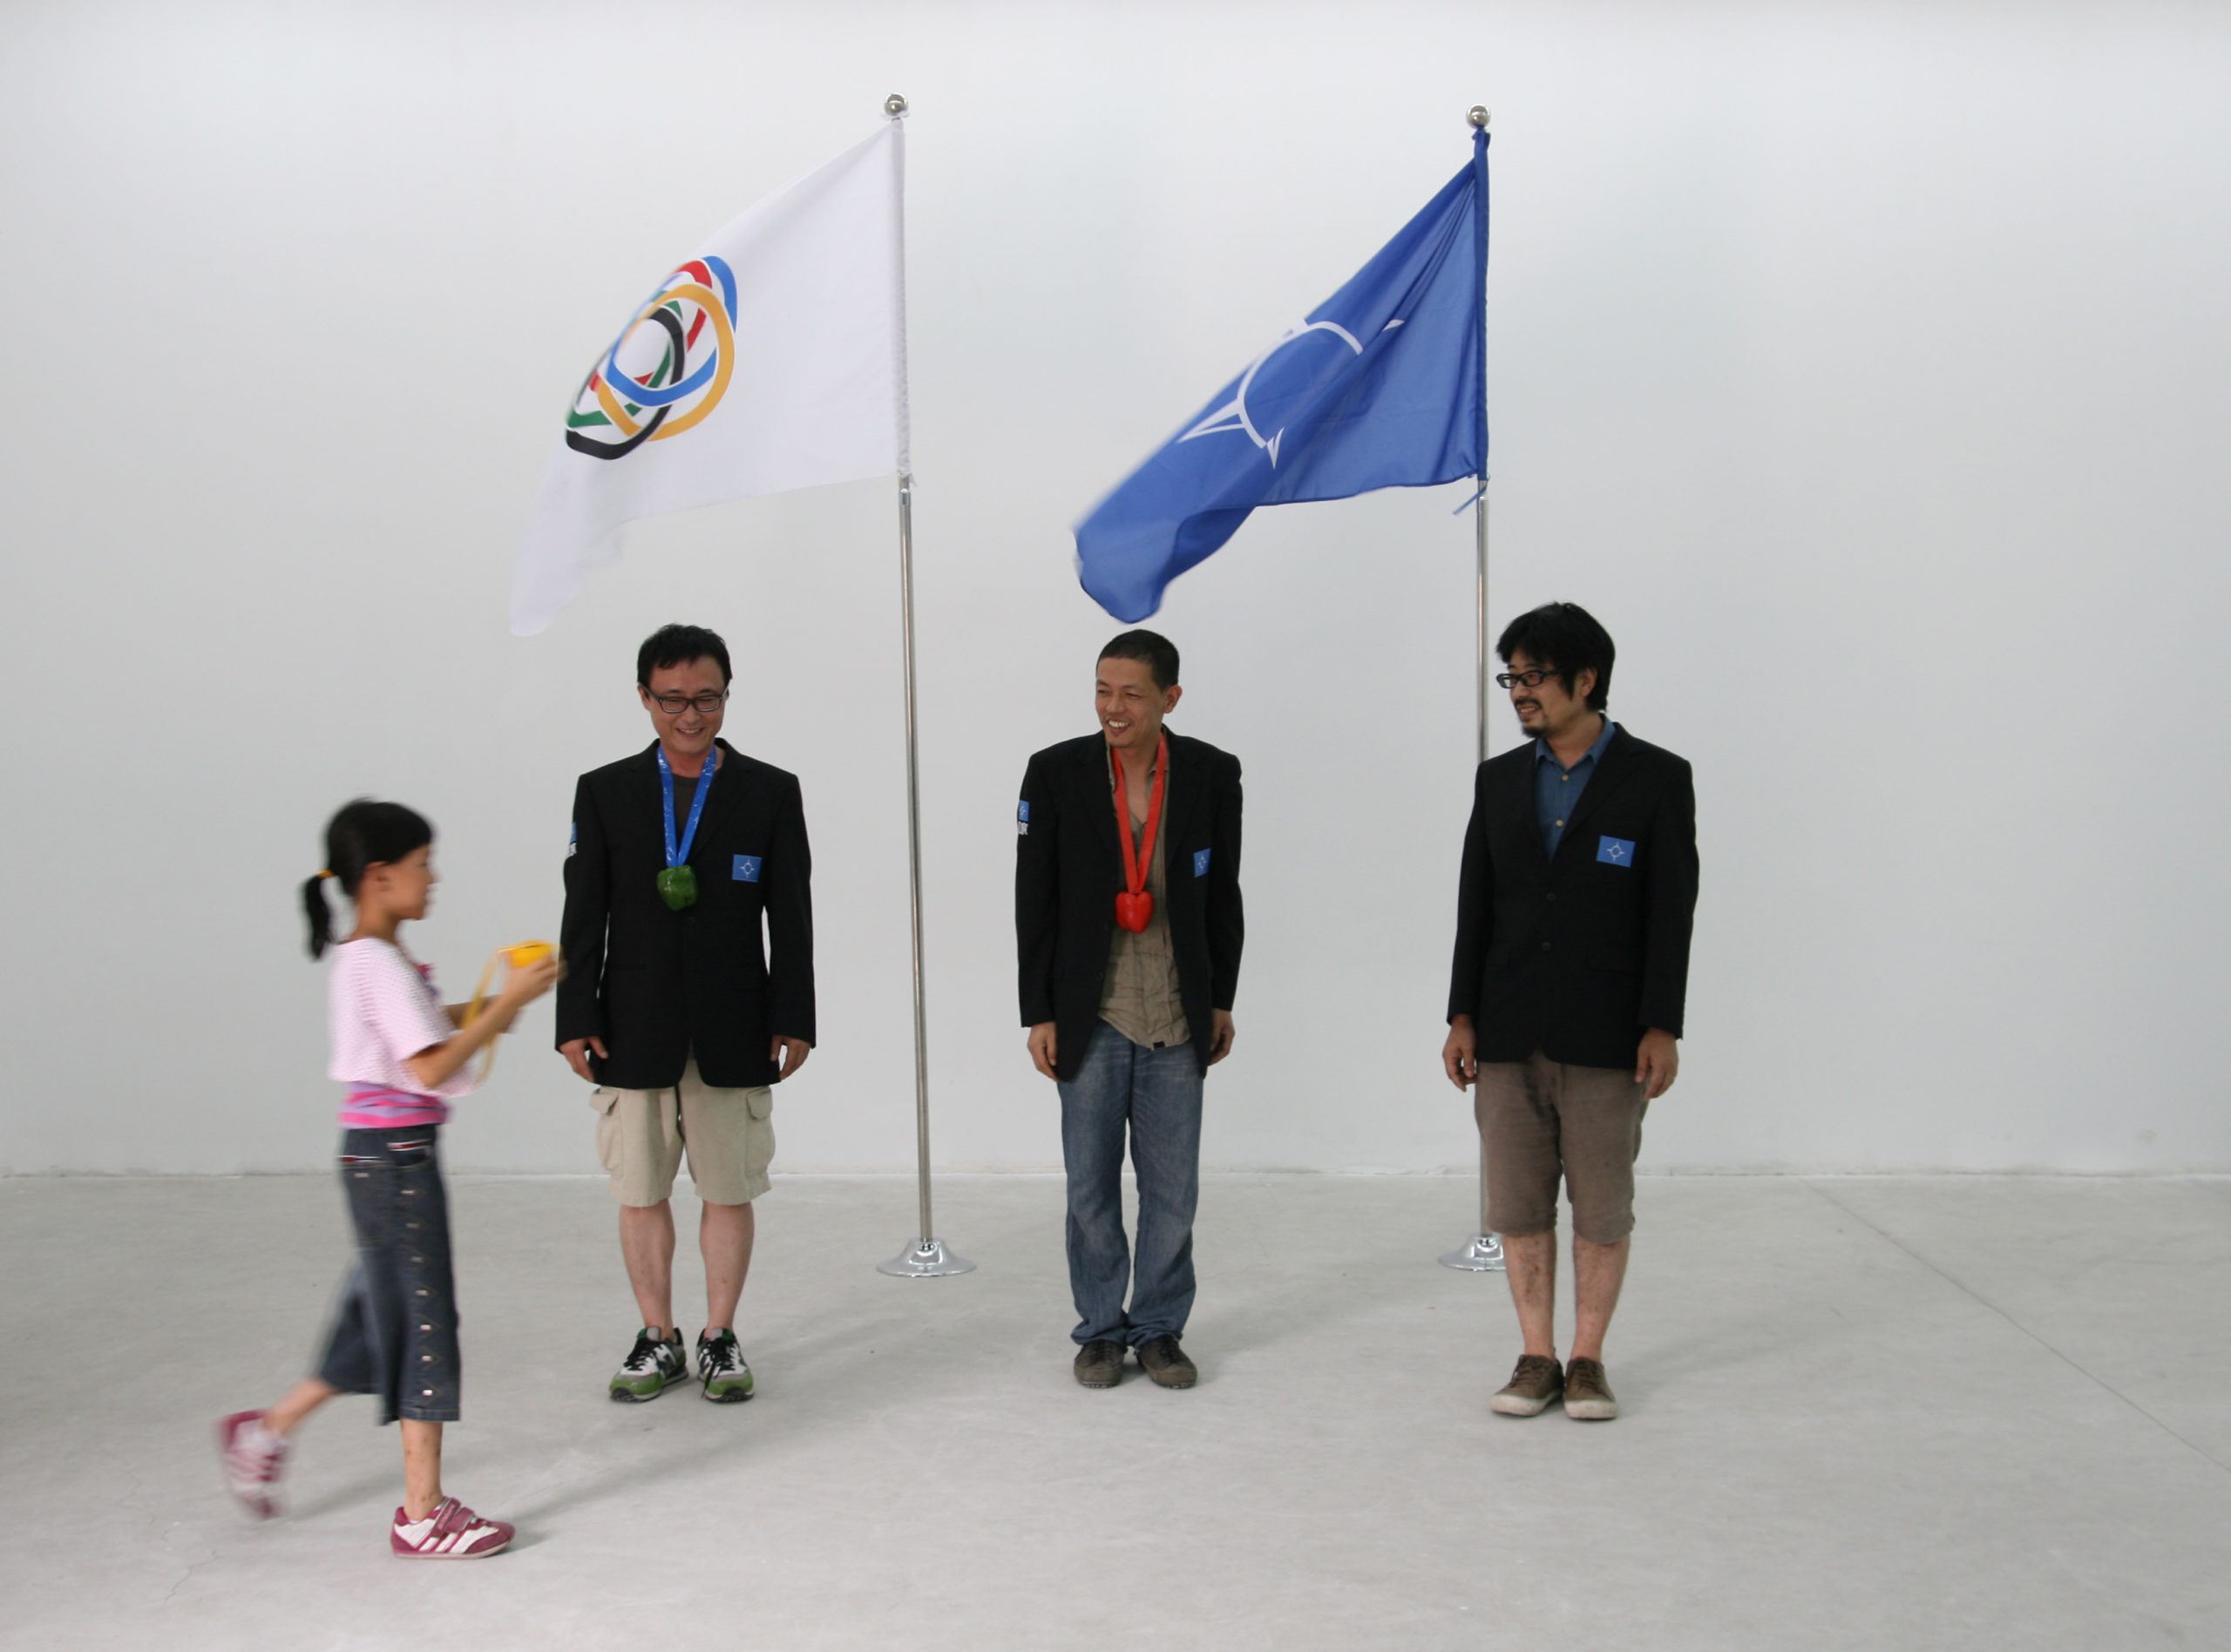 Xijing Men - Welcome to Xijing - Xijing Olympics - Medal Ceremony